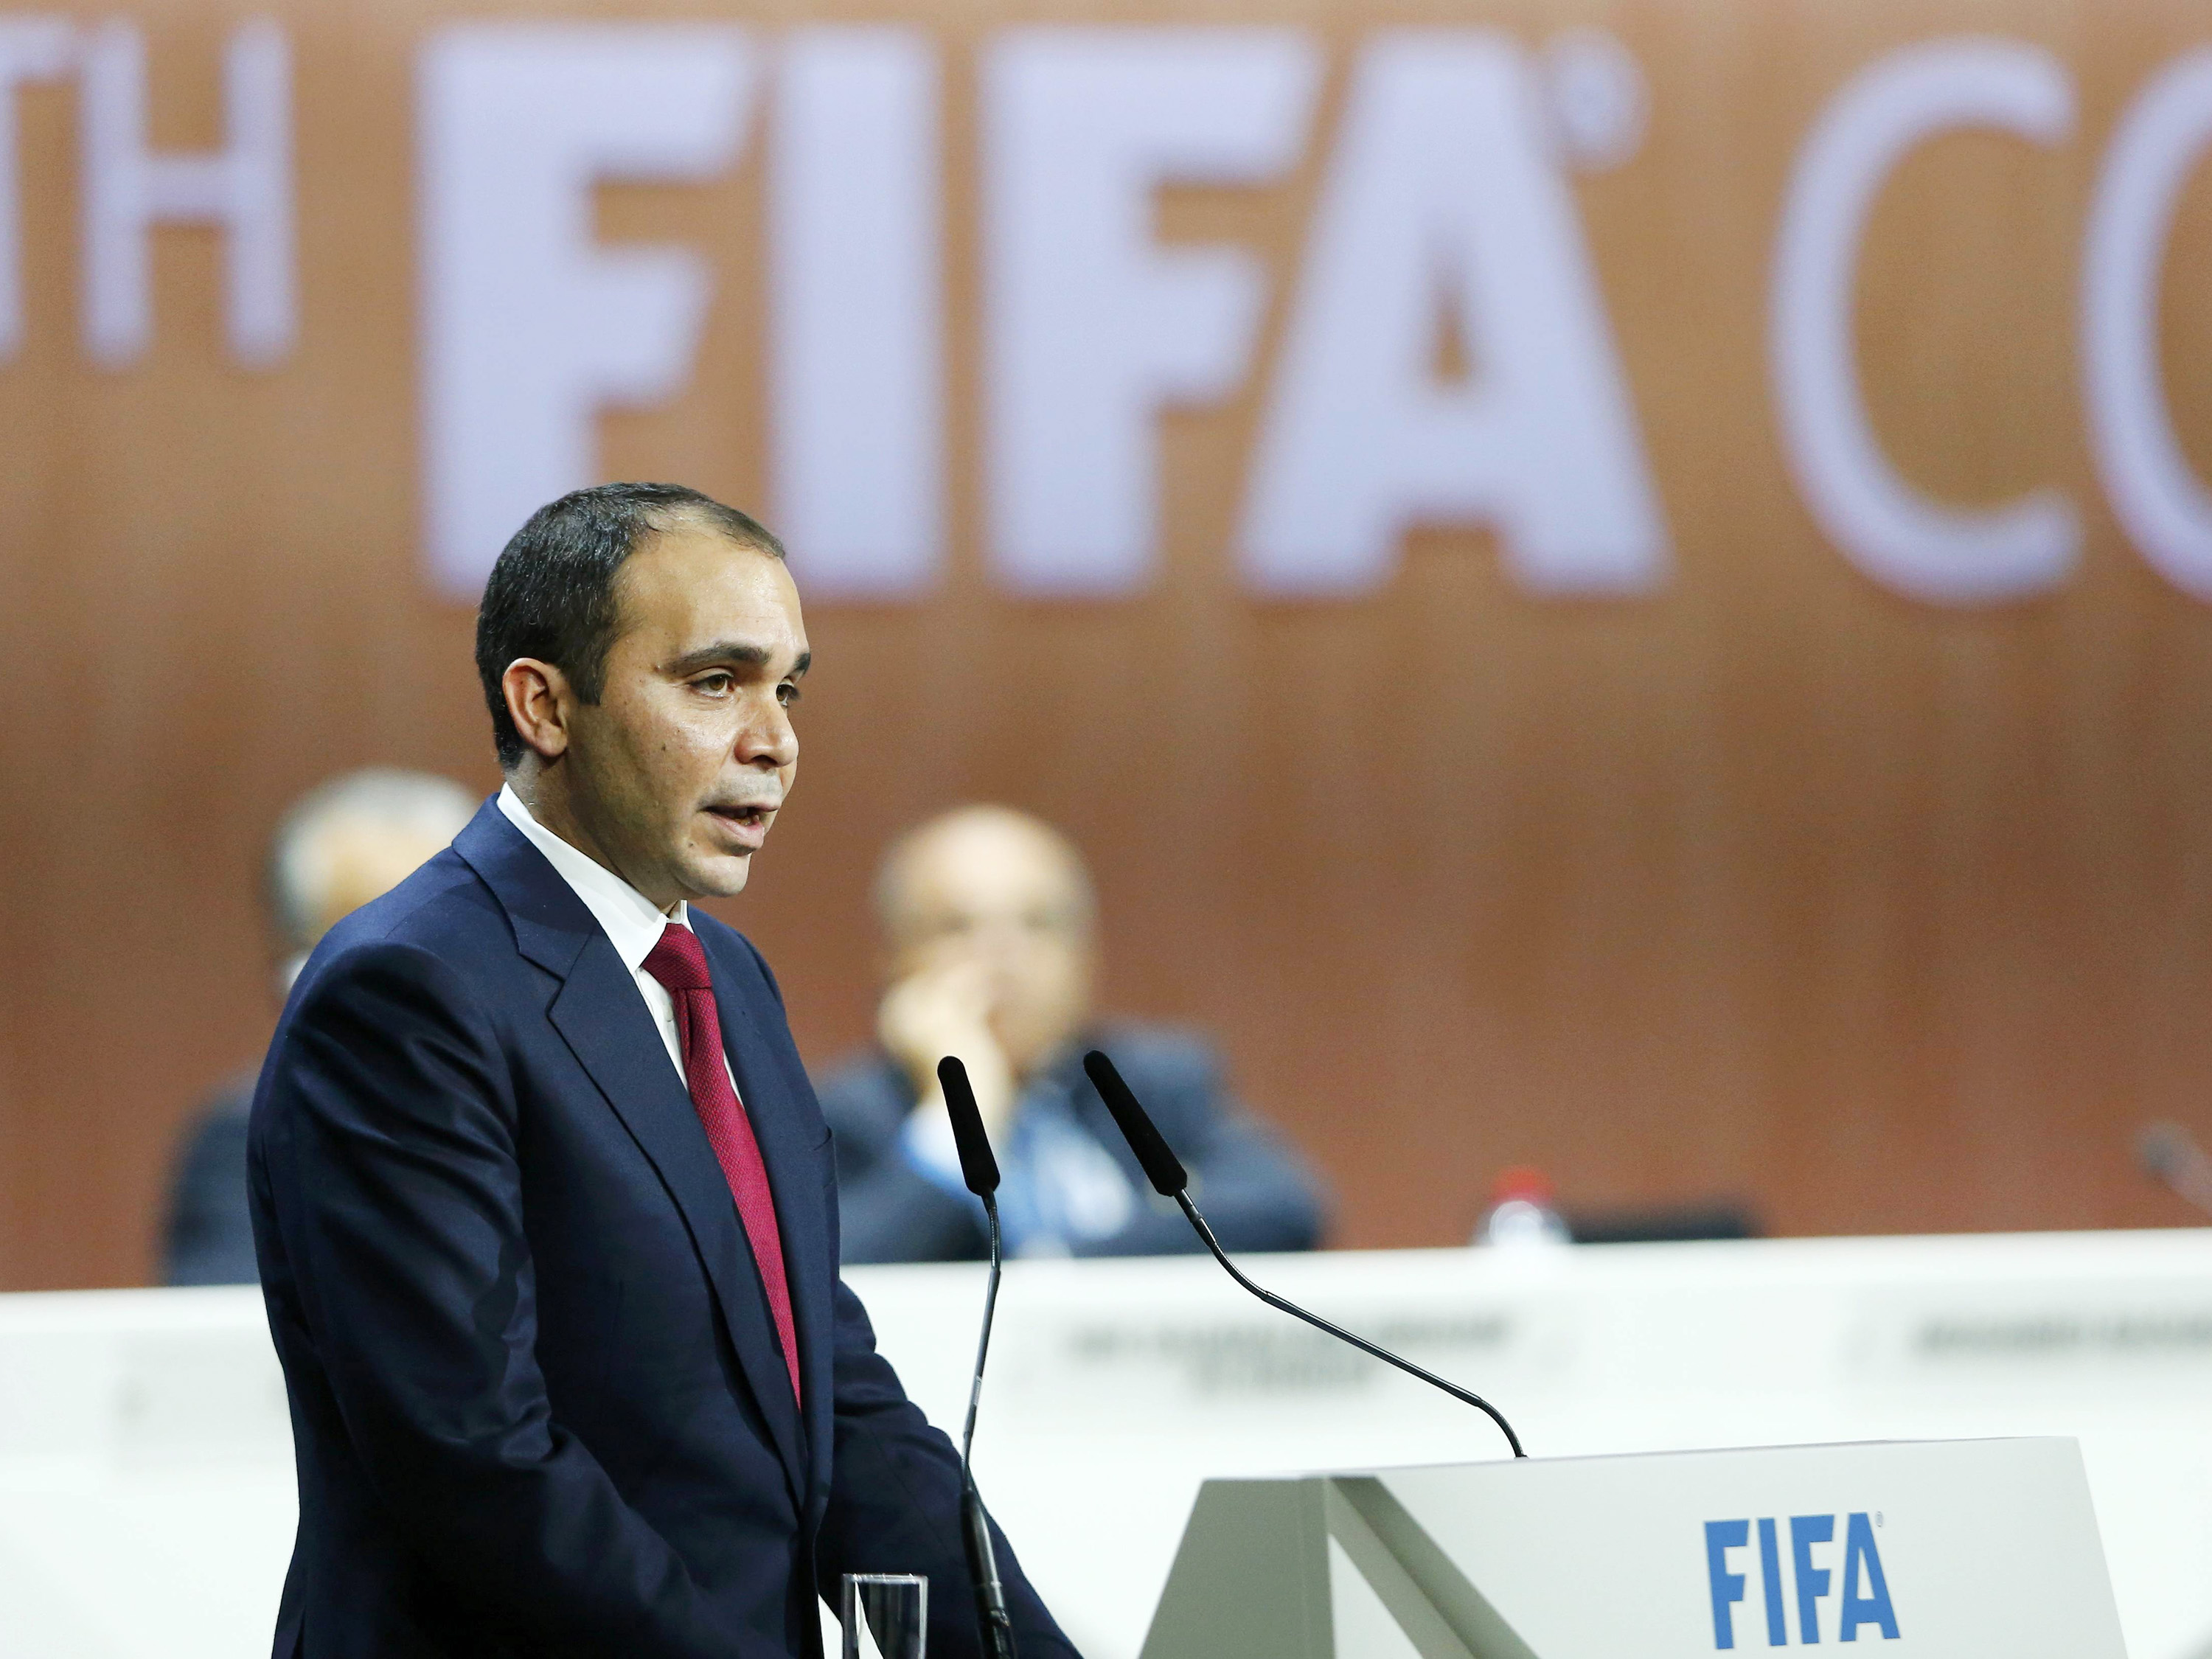 Corte rejeita recurso de candidato, e eleição da Fifa não terá cabines transparentes